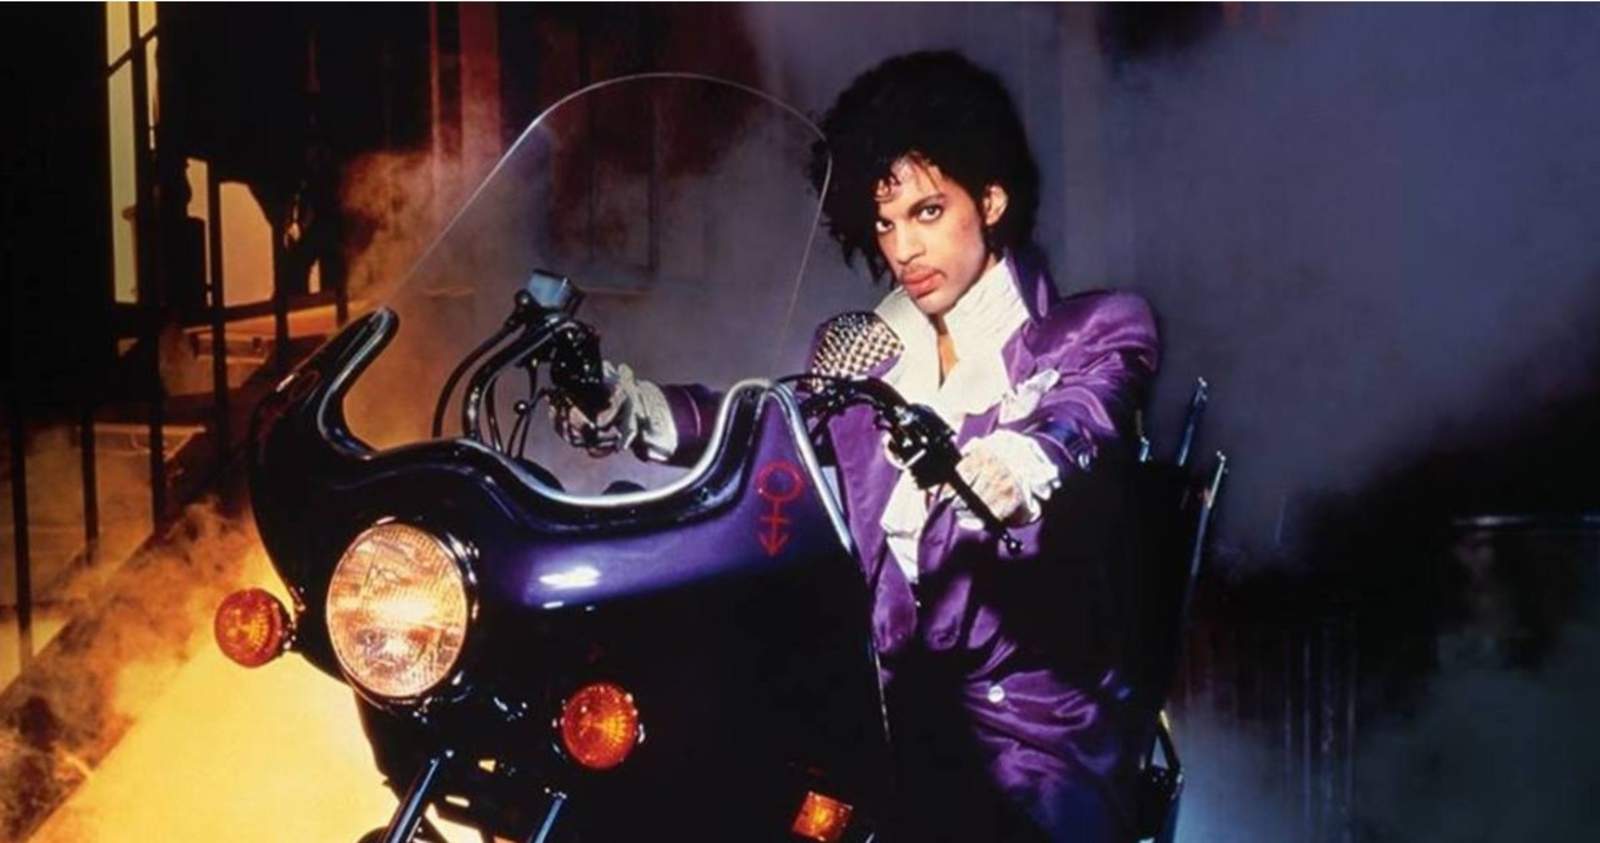 Proyecto. Universal trabaja en una película inspirada en las canciones de Prince, sin realizar una cinta biográfica. (ARCHIVO)